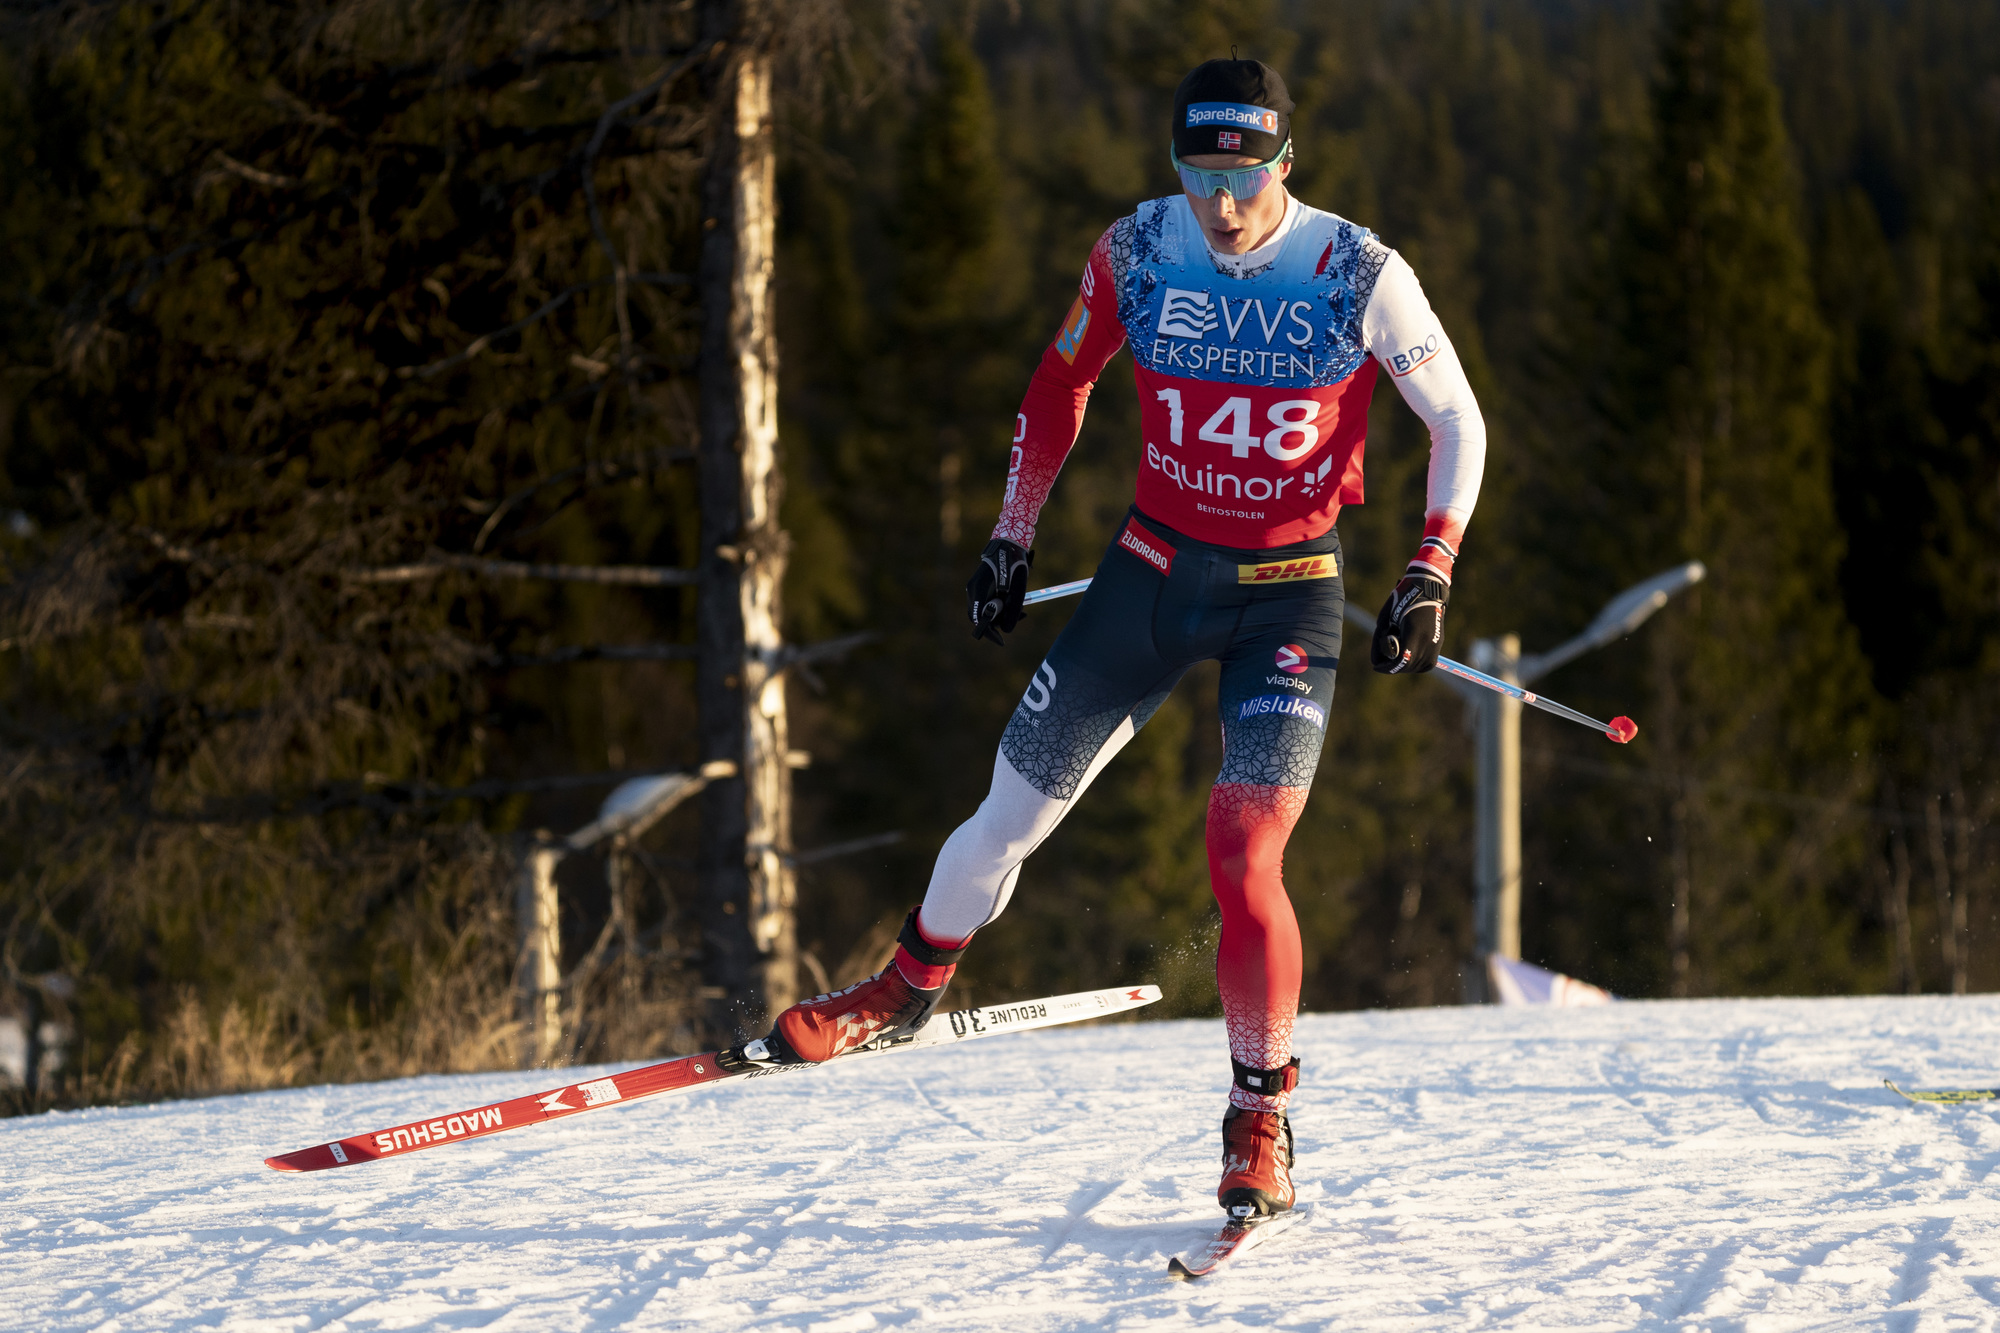 Впереди нас ехали спортсмены лыжники. Харальд Амундсен лыжник. Лыжные гонки. Норвежский лыжный спорт. Норвежская сборная по лыжным гонкам.